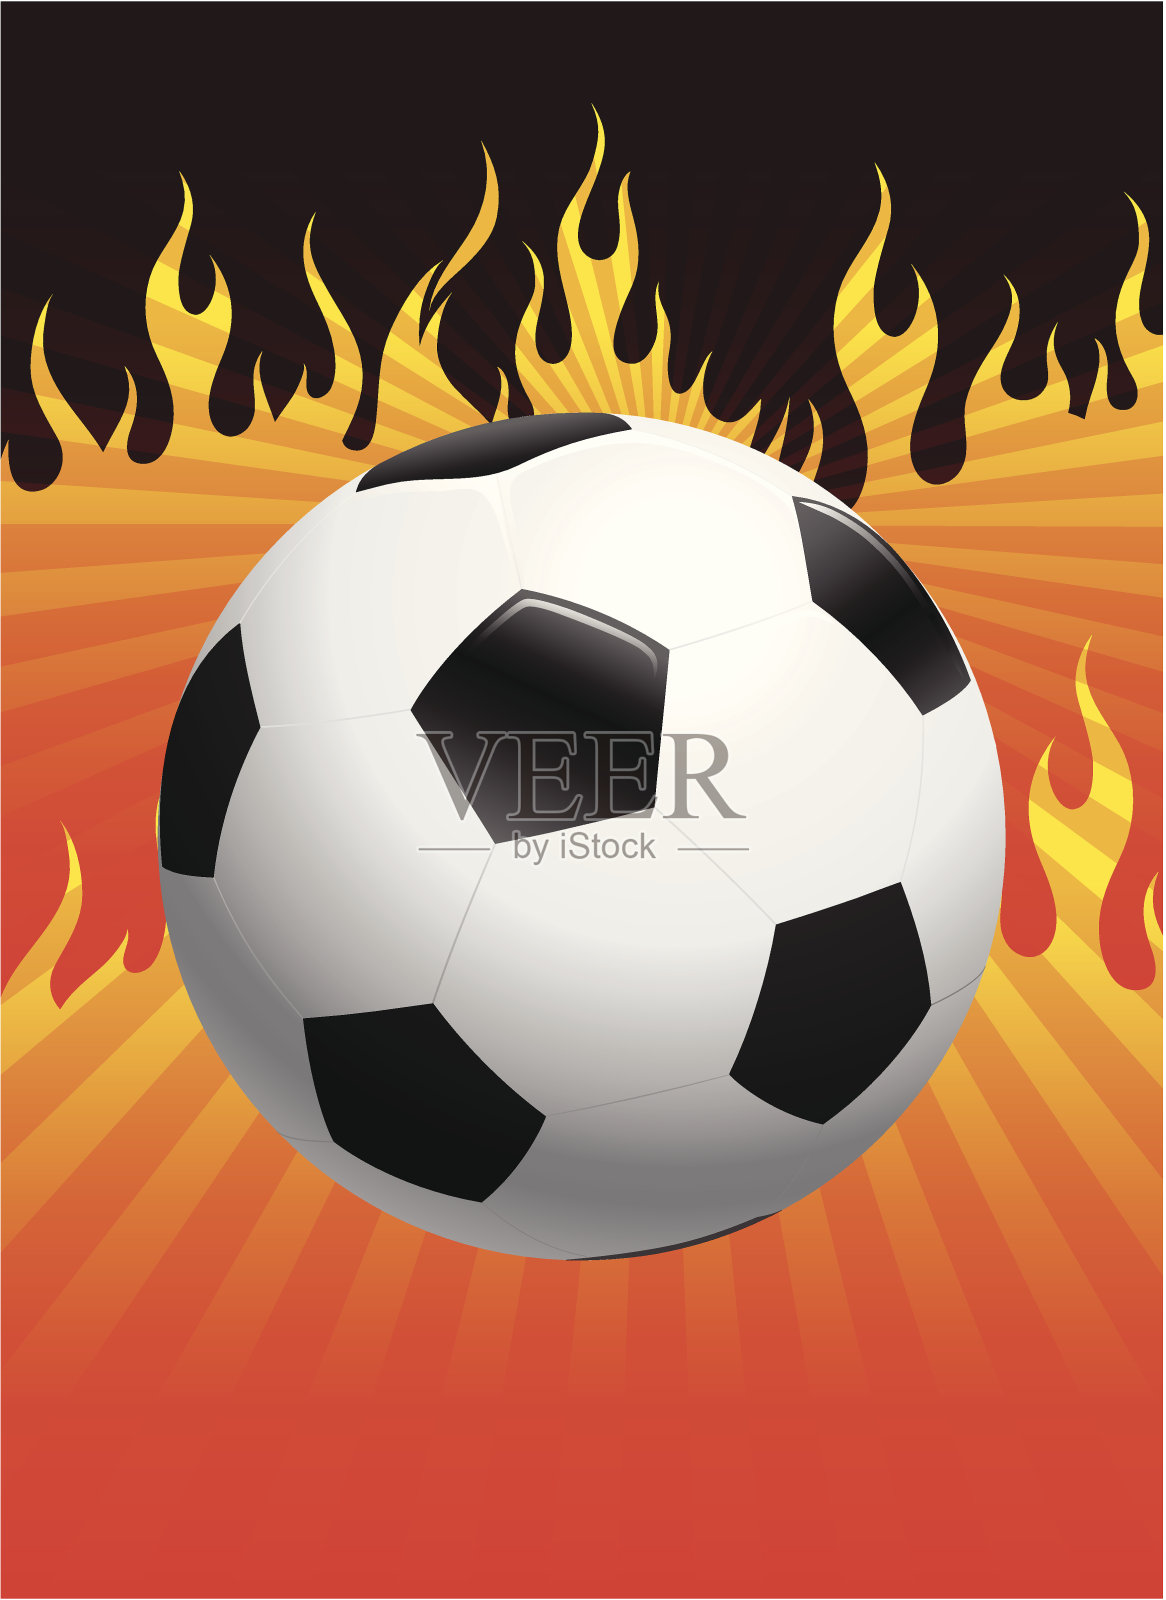 足球与燃烧的火焰背景插画图片素材